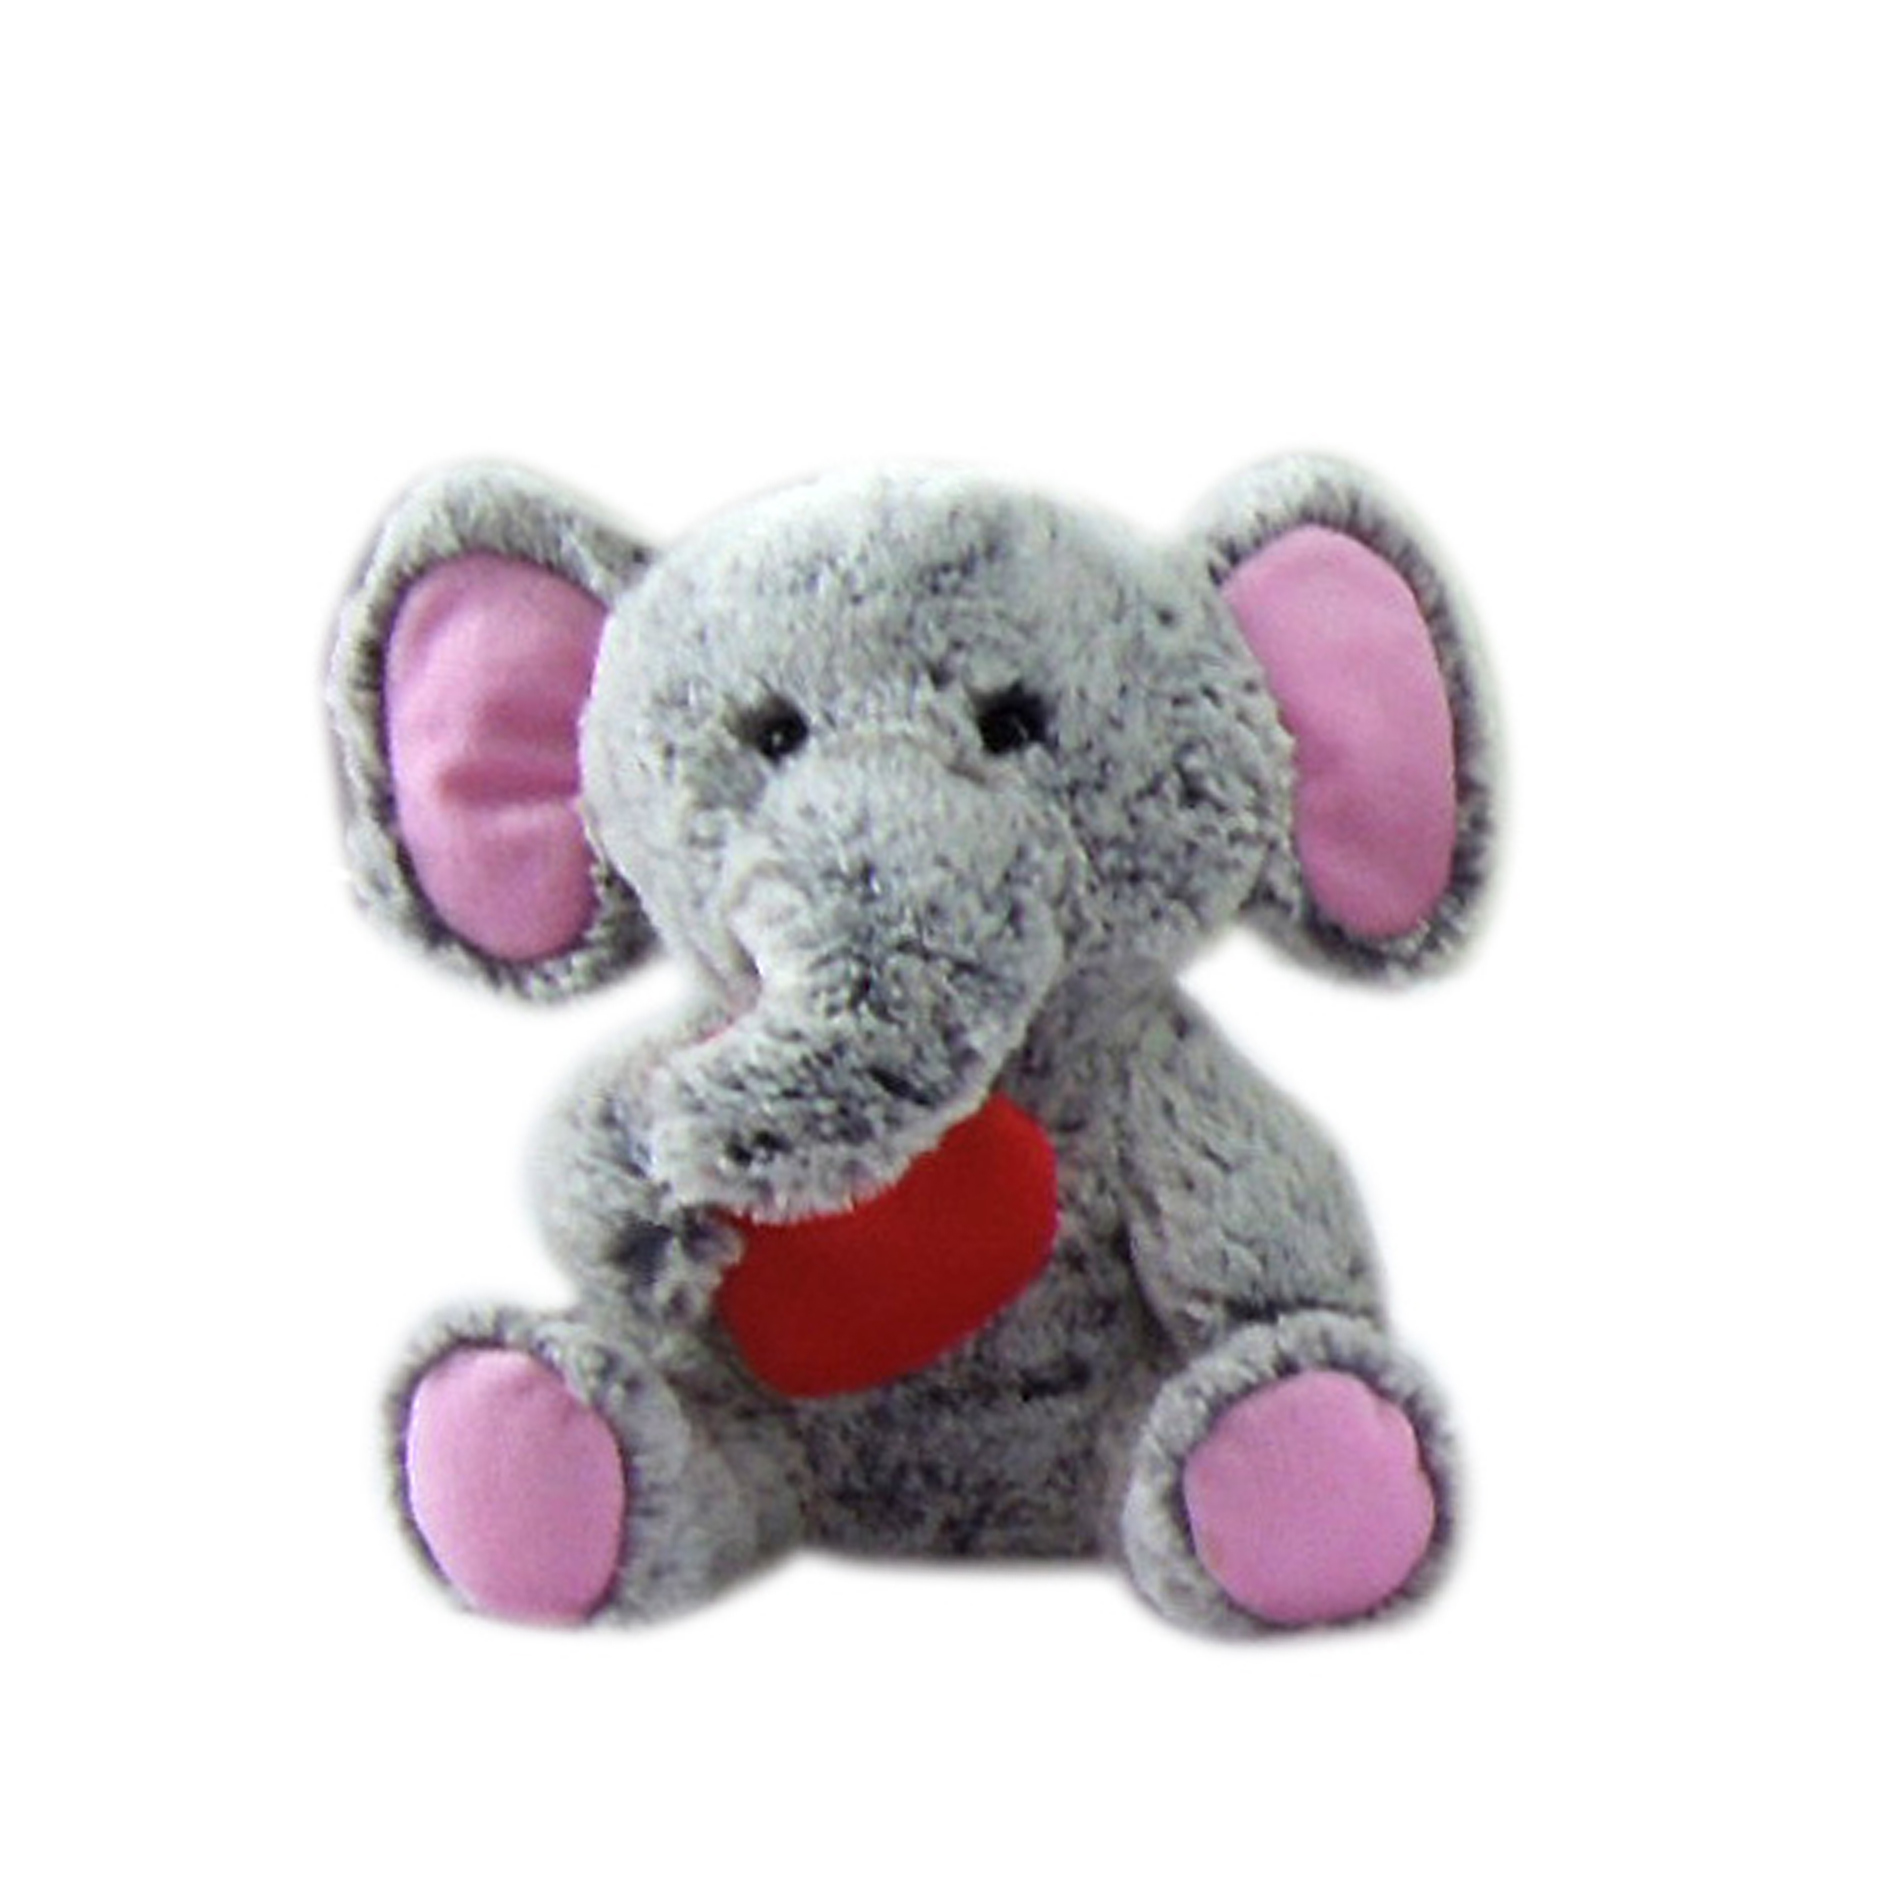 8" Cute Little Friends - Elephant